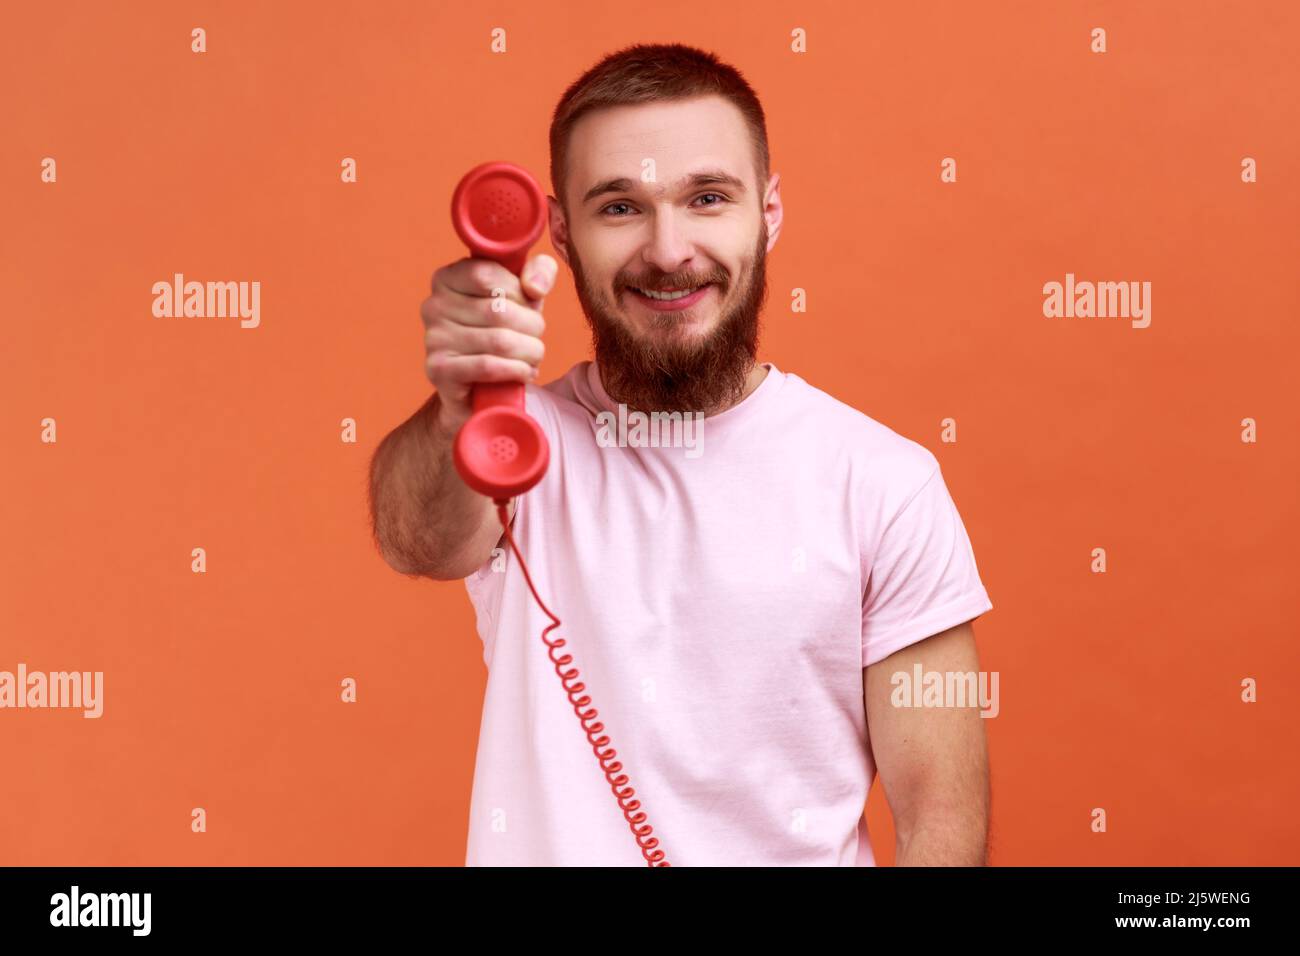 Ritratto di sorridente uomo bearded che tiene e mostra retro telefono cellulare alla fotocamera, chiedendo di rispondere al telefono, indossando T-shirt rosa. Studio interno girato isolato su sfondo arancione. Foto Stock